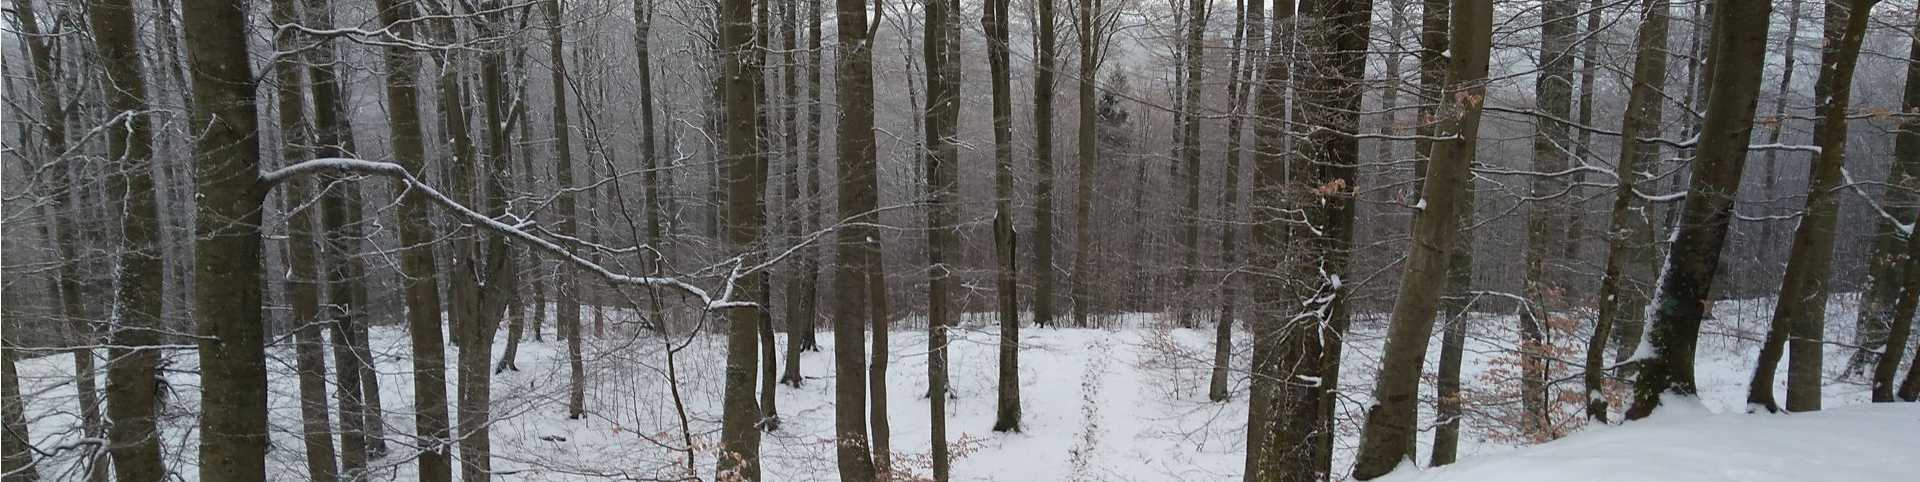 zaśnieżony las zimą